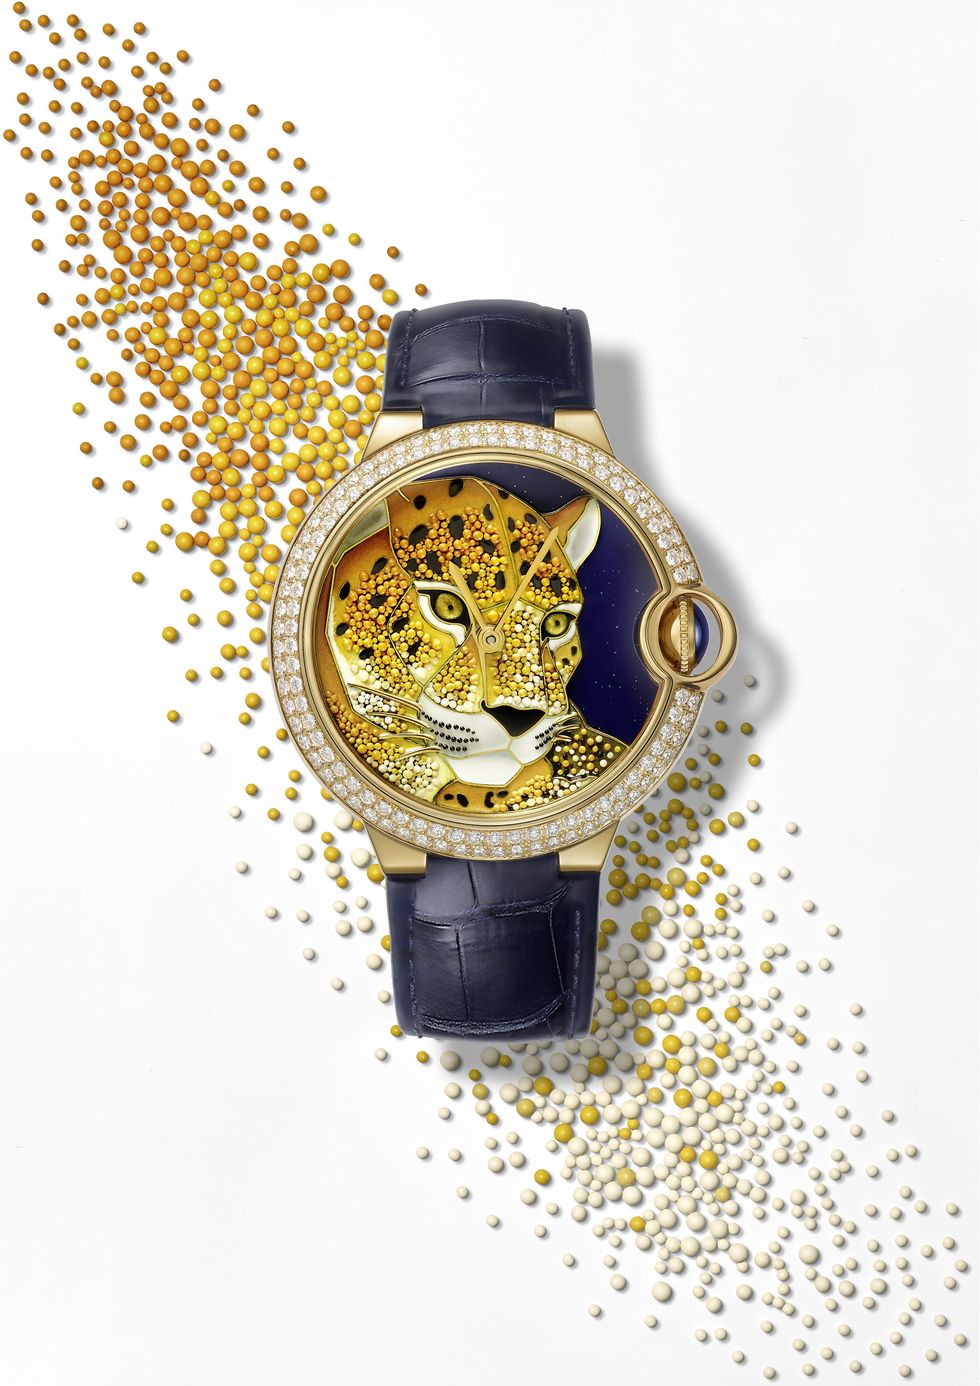 Ballon Bleu de Cartier琺瑯珠粒工藝美洲豹腕錶